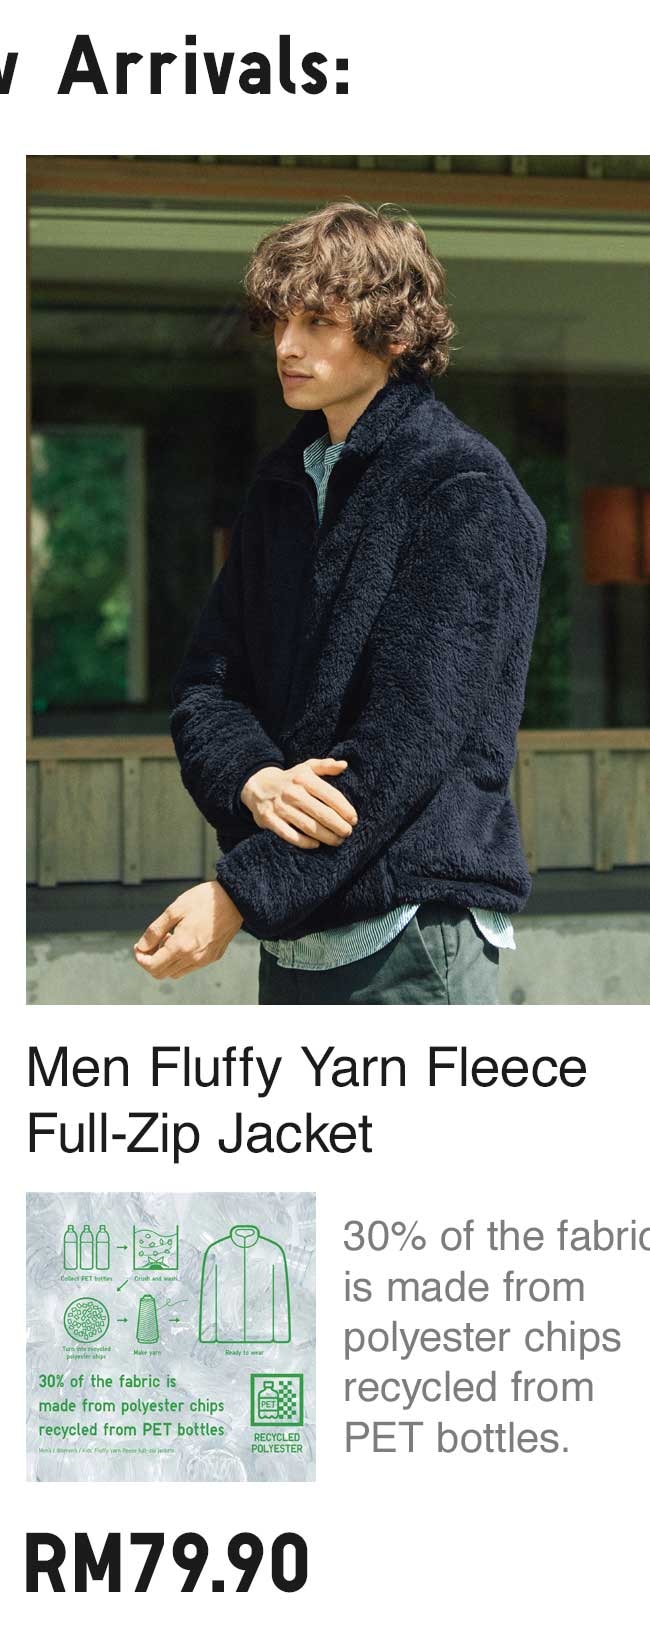 MEN FLUFFY YARN FLEECE FULL-ZIP JACKET